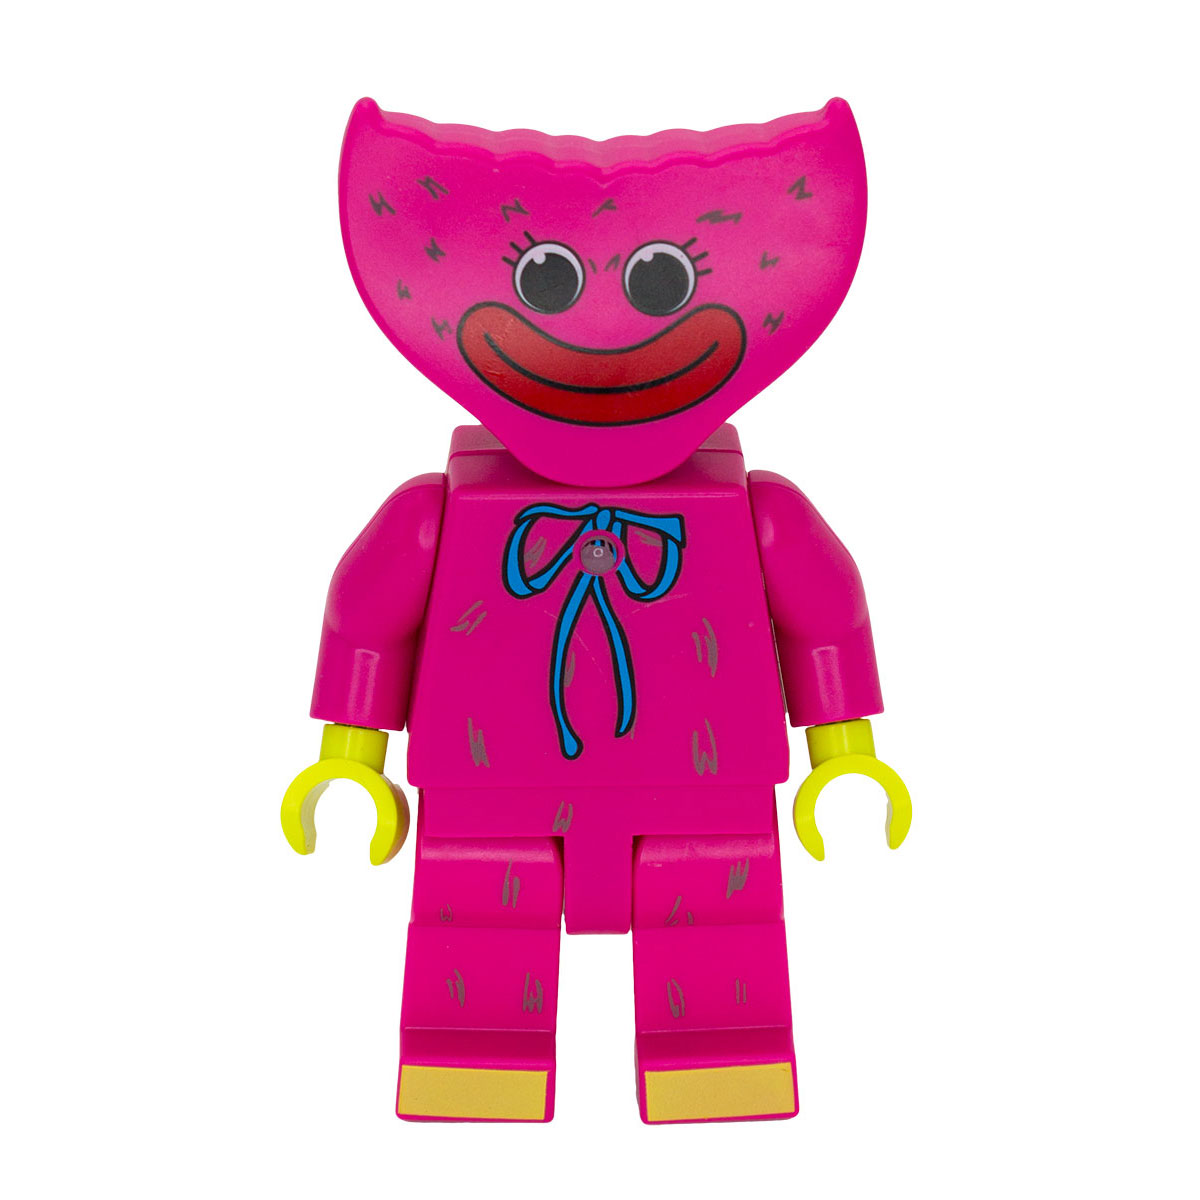 Фигурка Михи-Михи Кисси Мисси с подсветкой розовая 18 см - фото 1